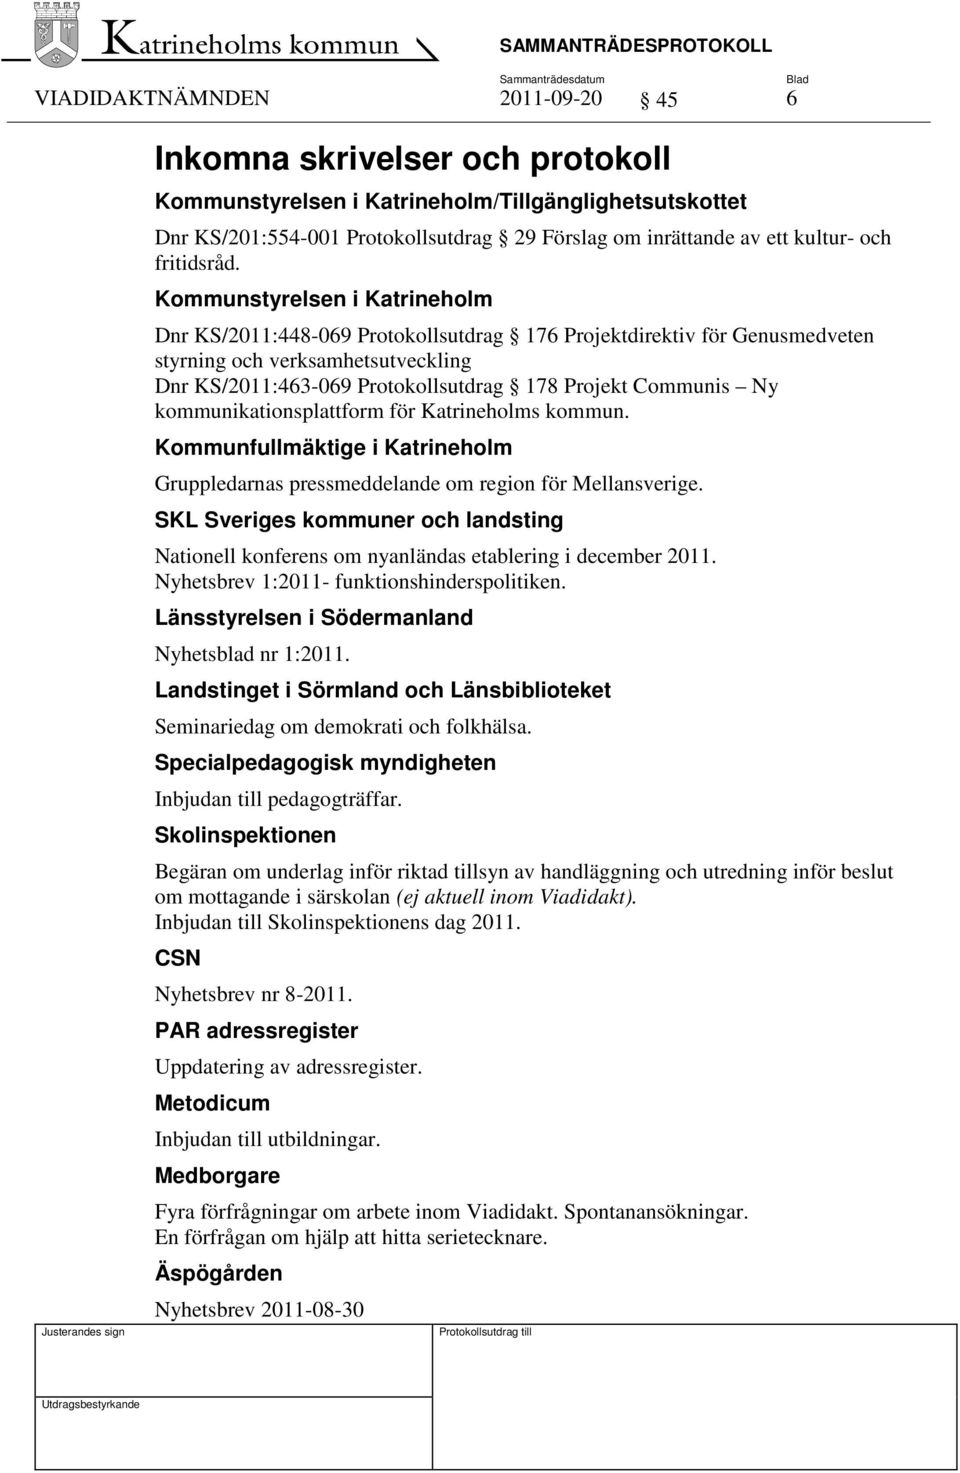 Kommunstyrelsen i Katrineholm Dnr KS/2011:448-069 Protokollsutdrag 176 Projektdirektiv för Genusmedveten styrning och verksamhetsutveckling Dnr KS/2011:463-069 Protokollsutdrag 178 Projekt Communis